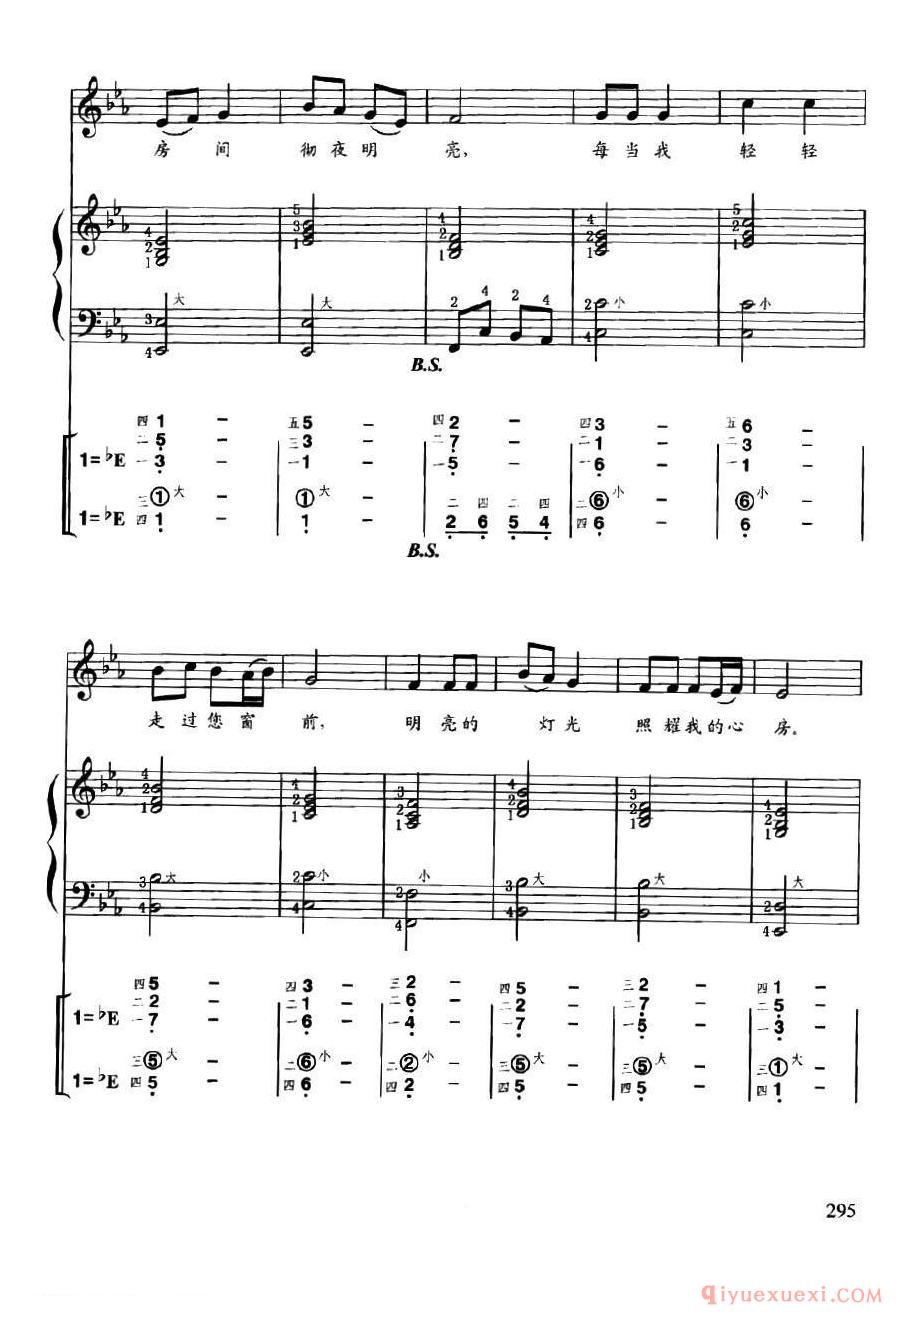 手风琴乐曲谱【每当我走过老师窗前】线简谱对照、带指法、带歌词版